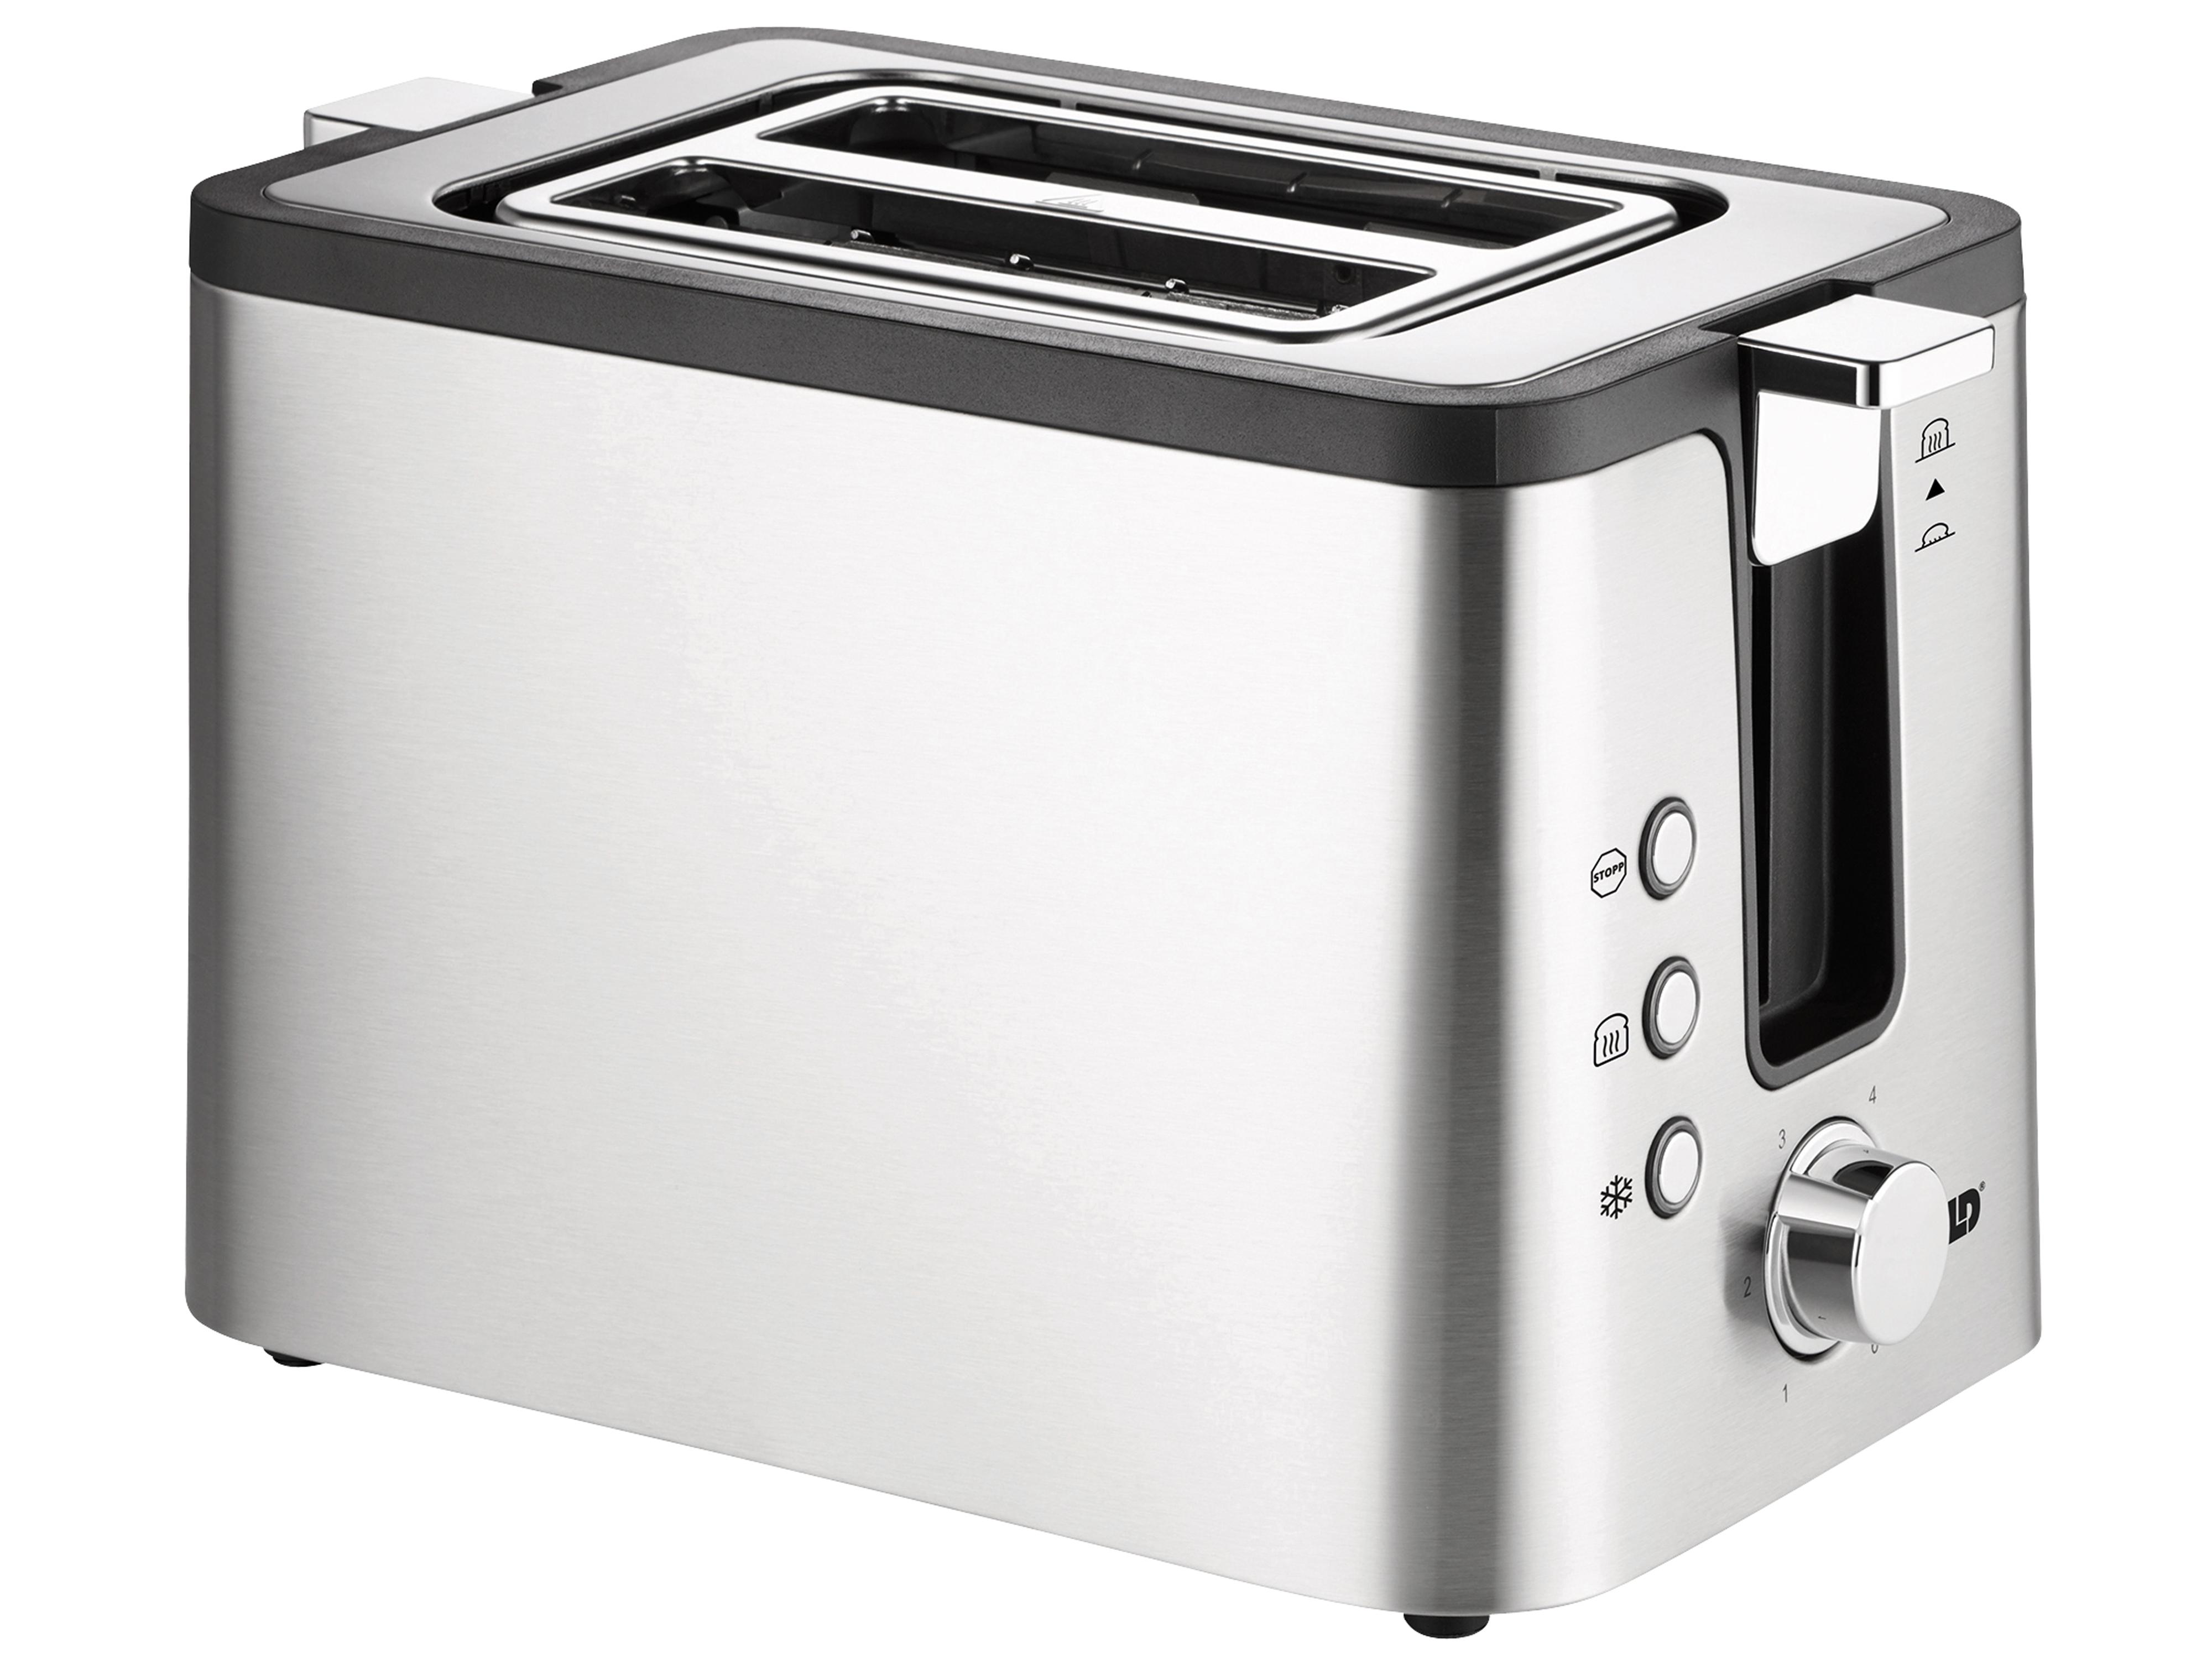 UNOLD Toaster 2er Kompakt 38215, edelstahl, 800 W